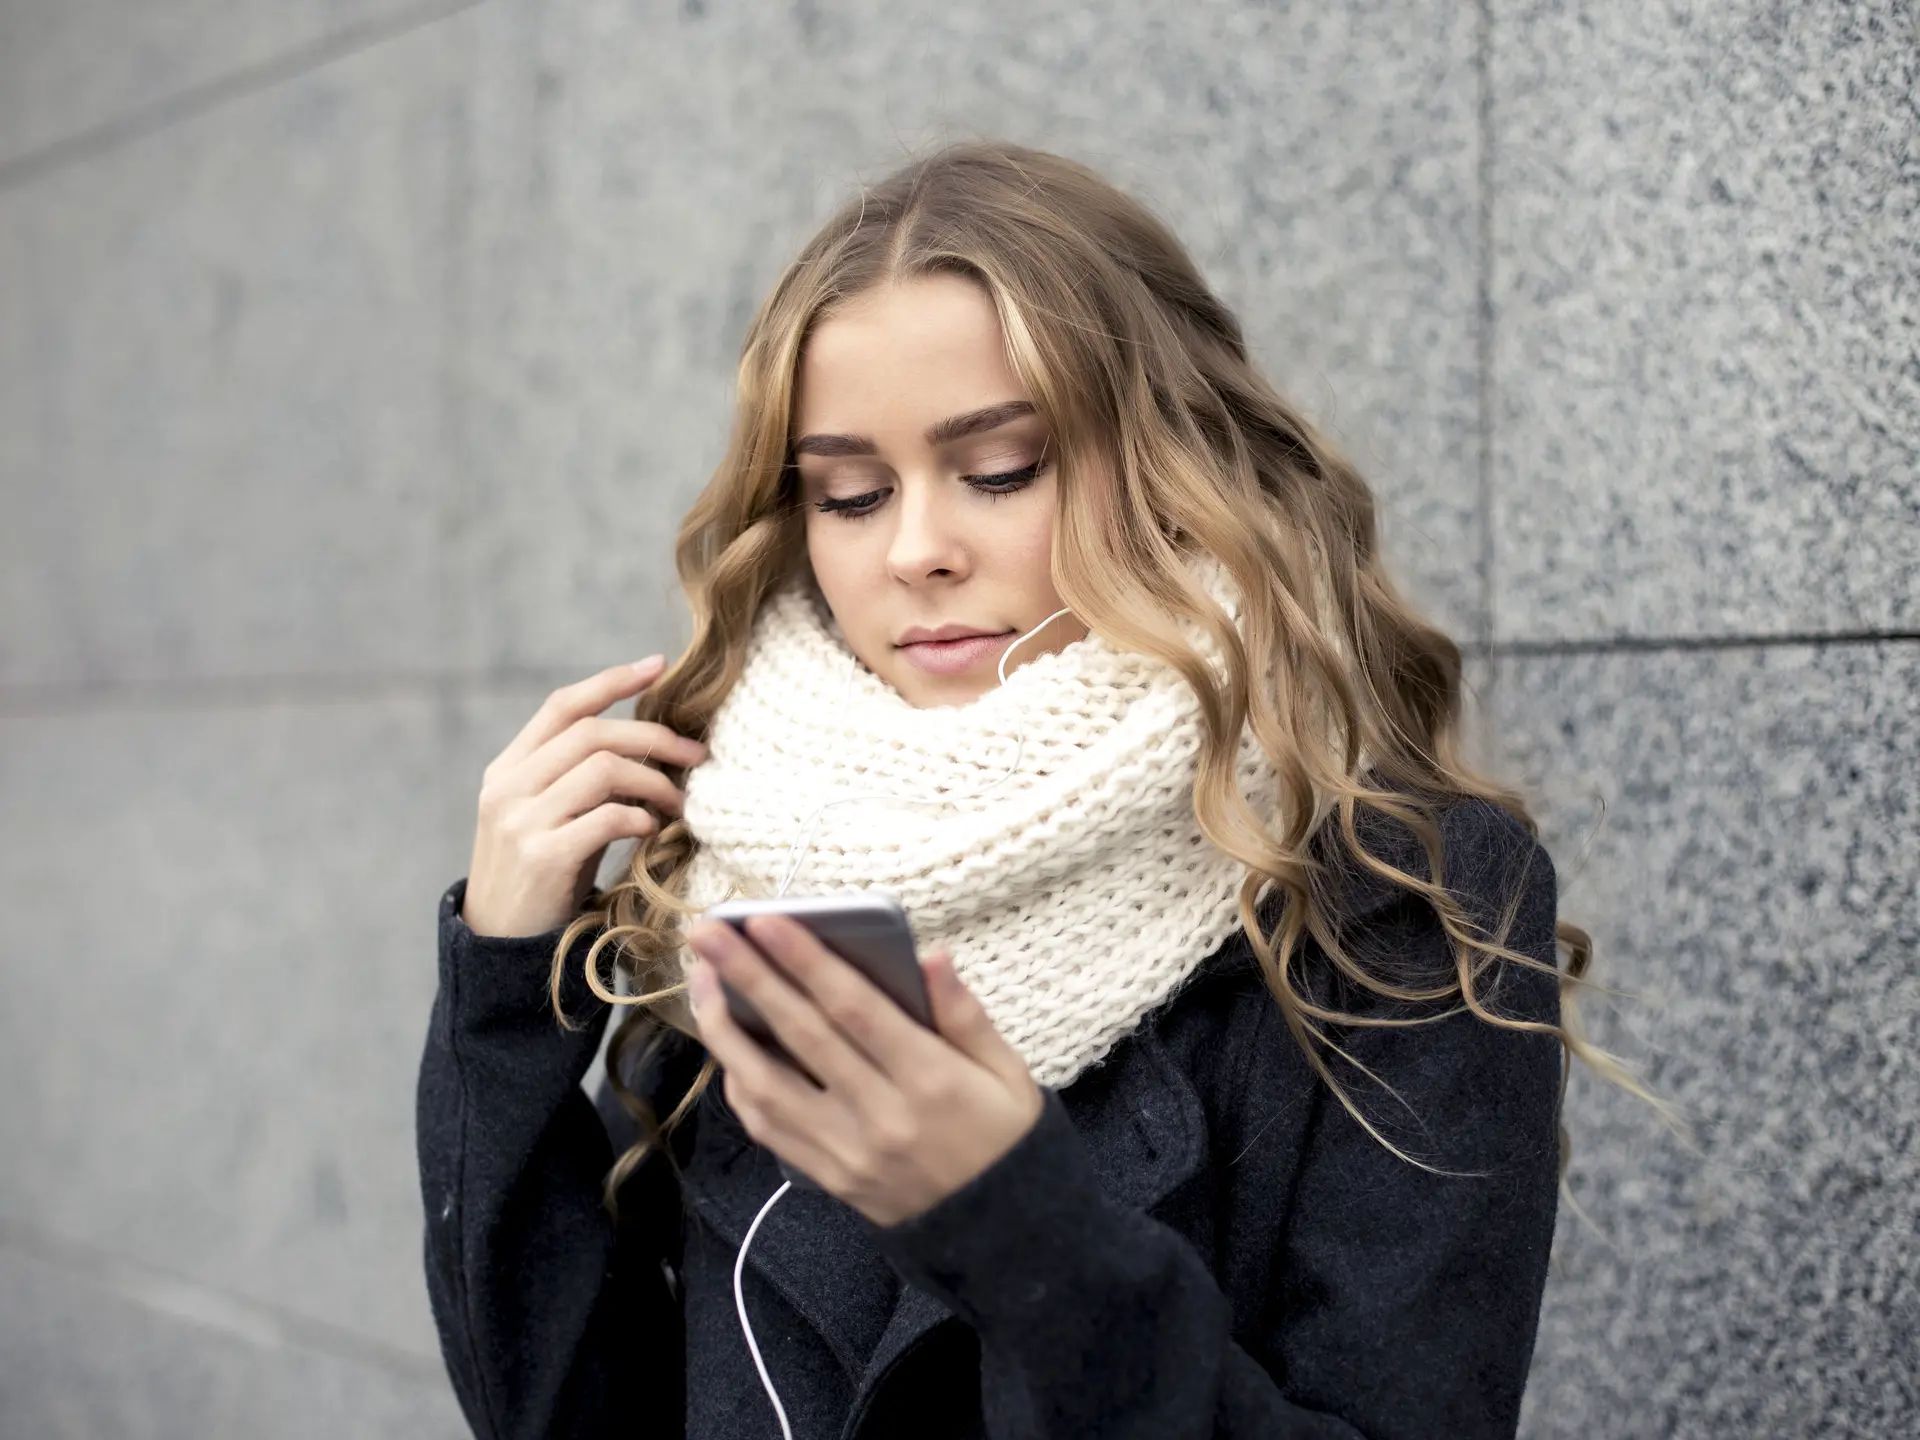 Ung pige med hvidt halstørklæde hører musik mens hun kigger på sin telefon 